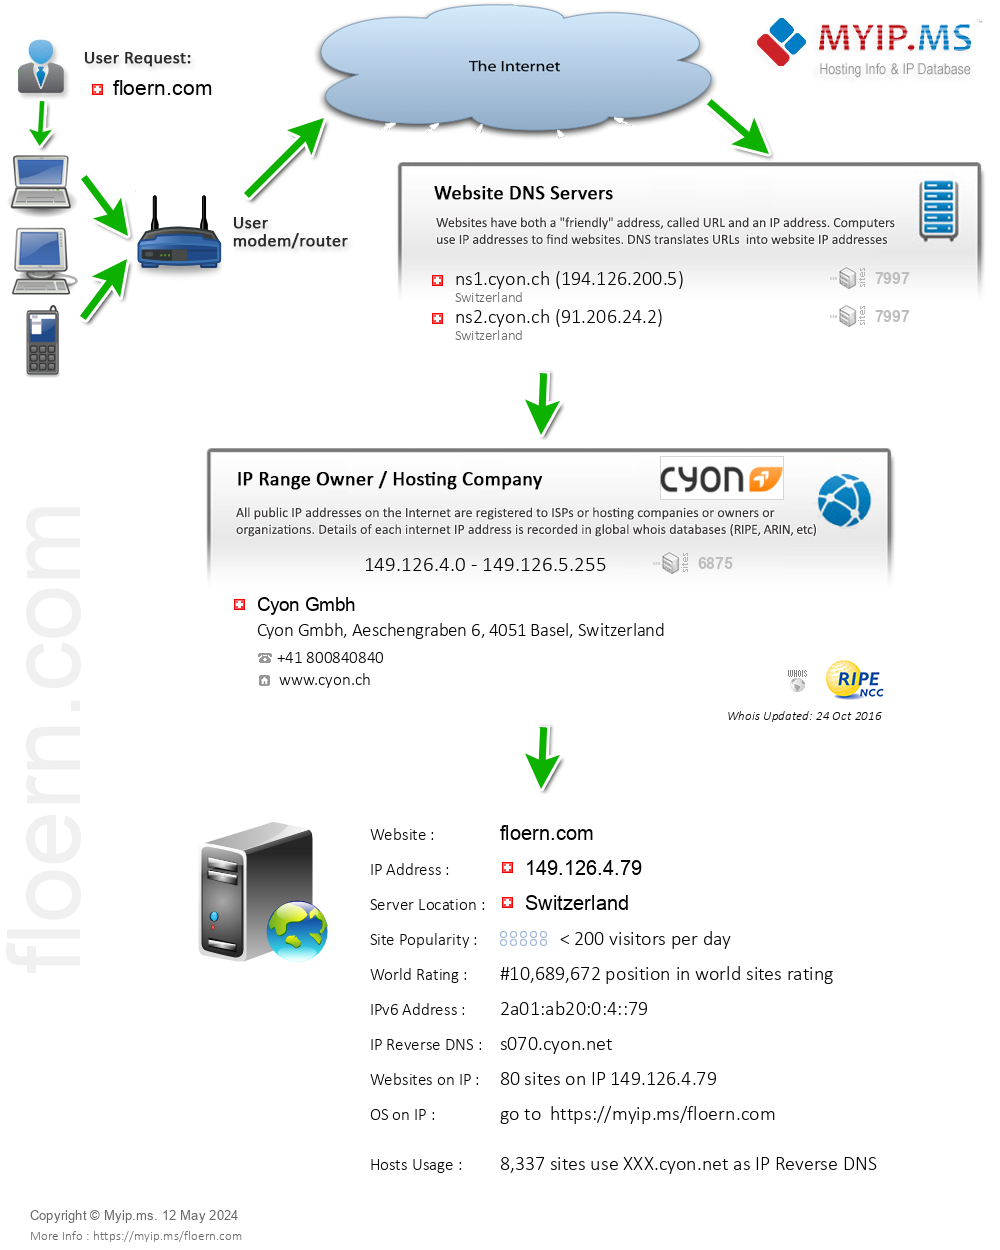 Floern.com - Website Hosting Visual IP Diagram